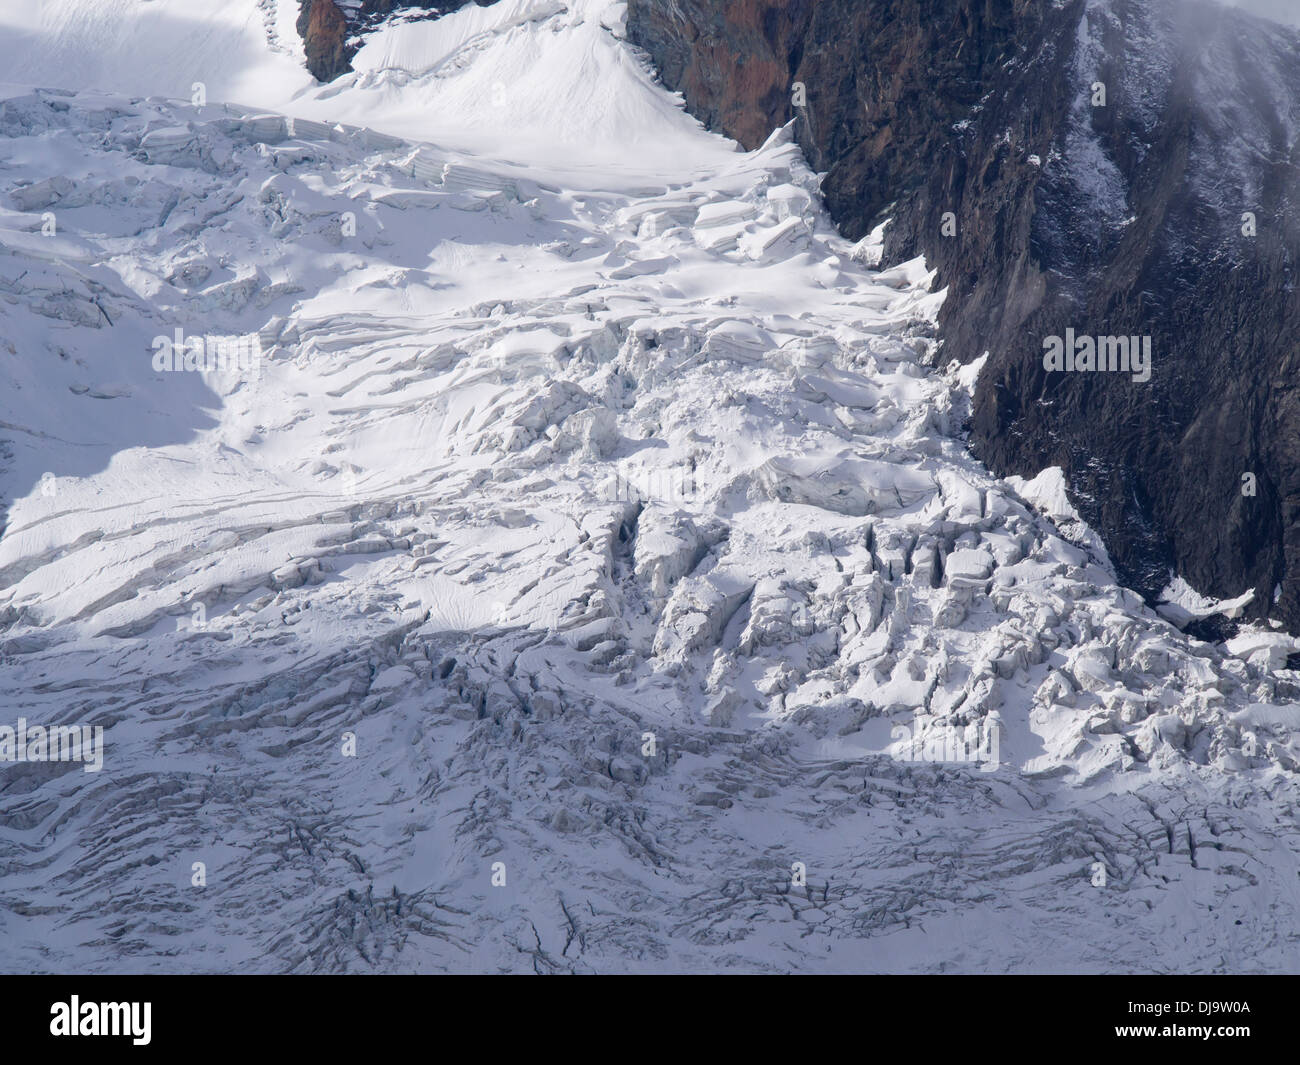 Glacier du Gorner, glaciation alpine, Gornergletscher, près de Zermatt en Suisse, crevasses sur une section raide Banque D'Images